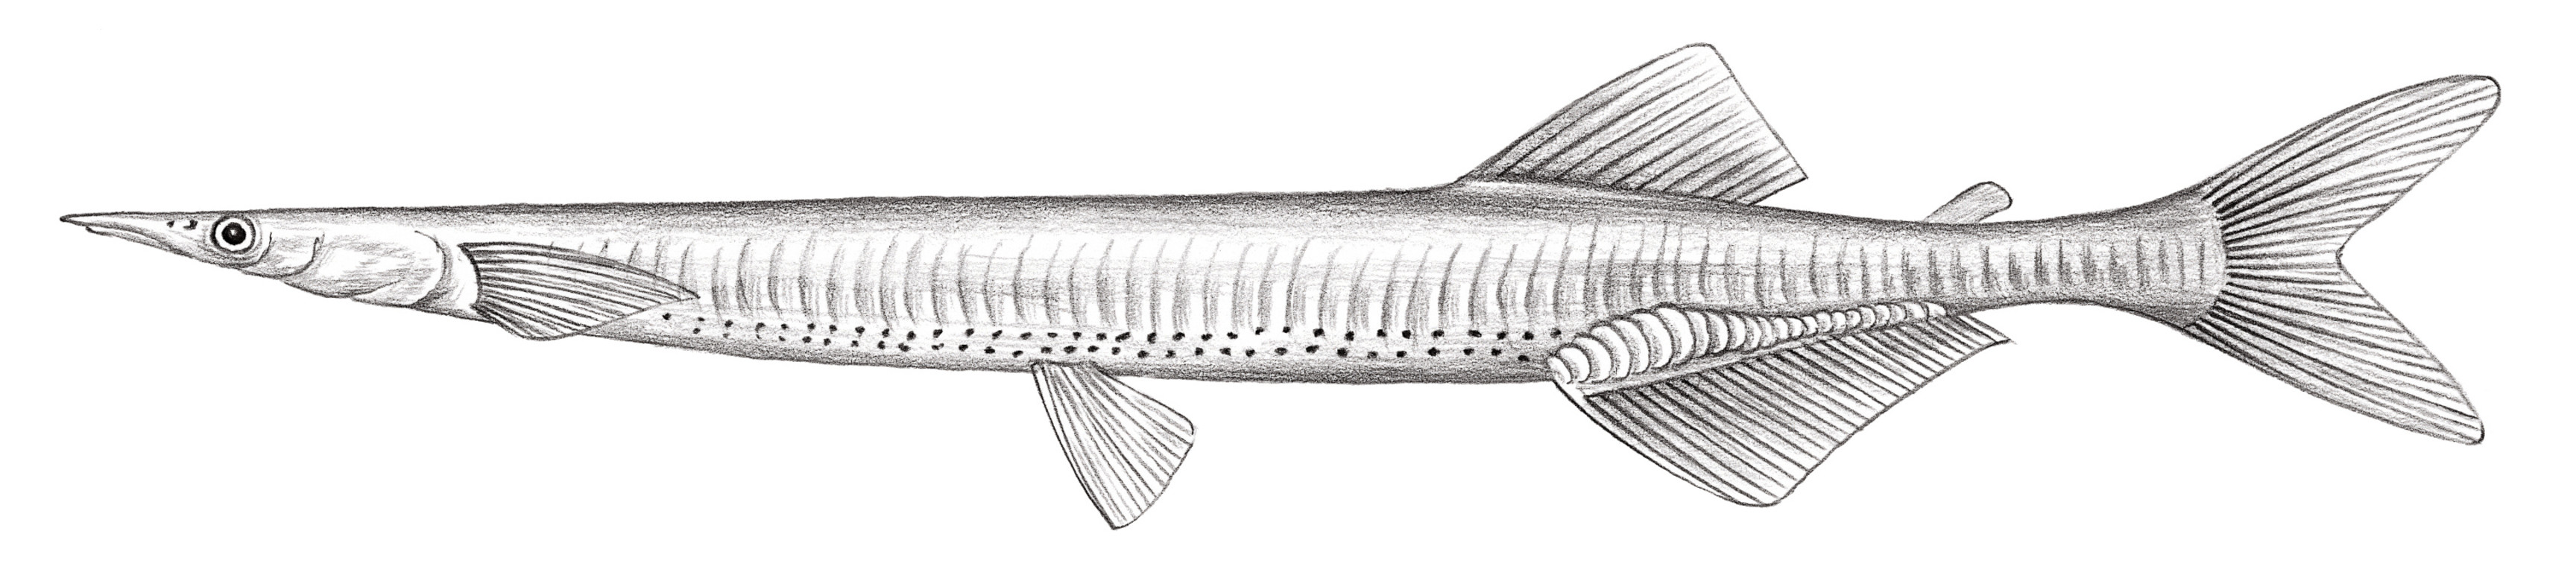 395.	有明銀魚 Salanx ariakensis Kishinouye, 1902